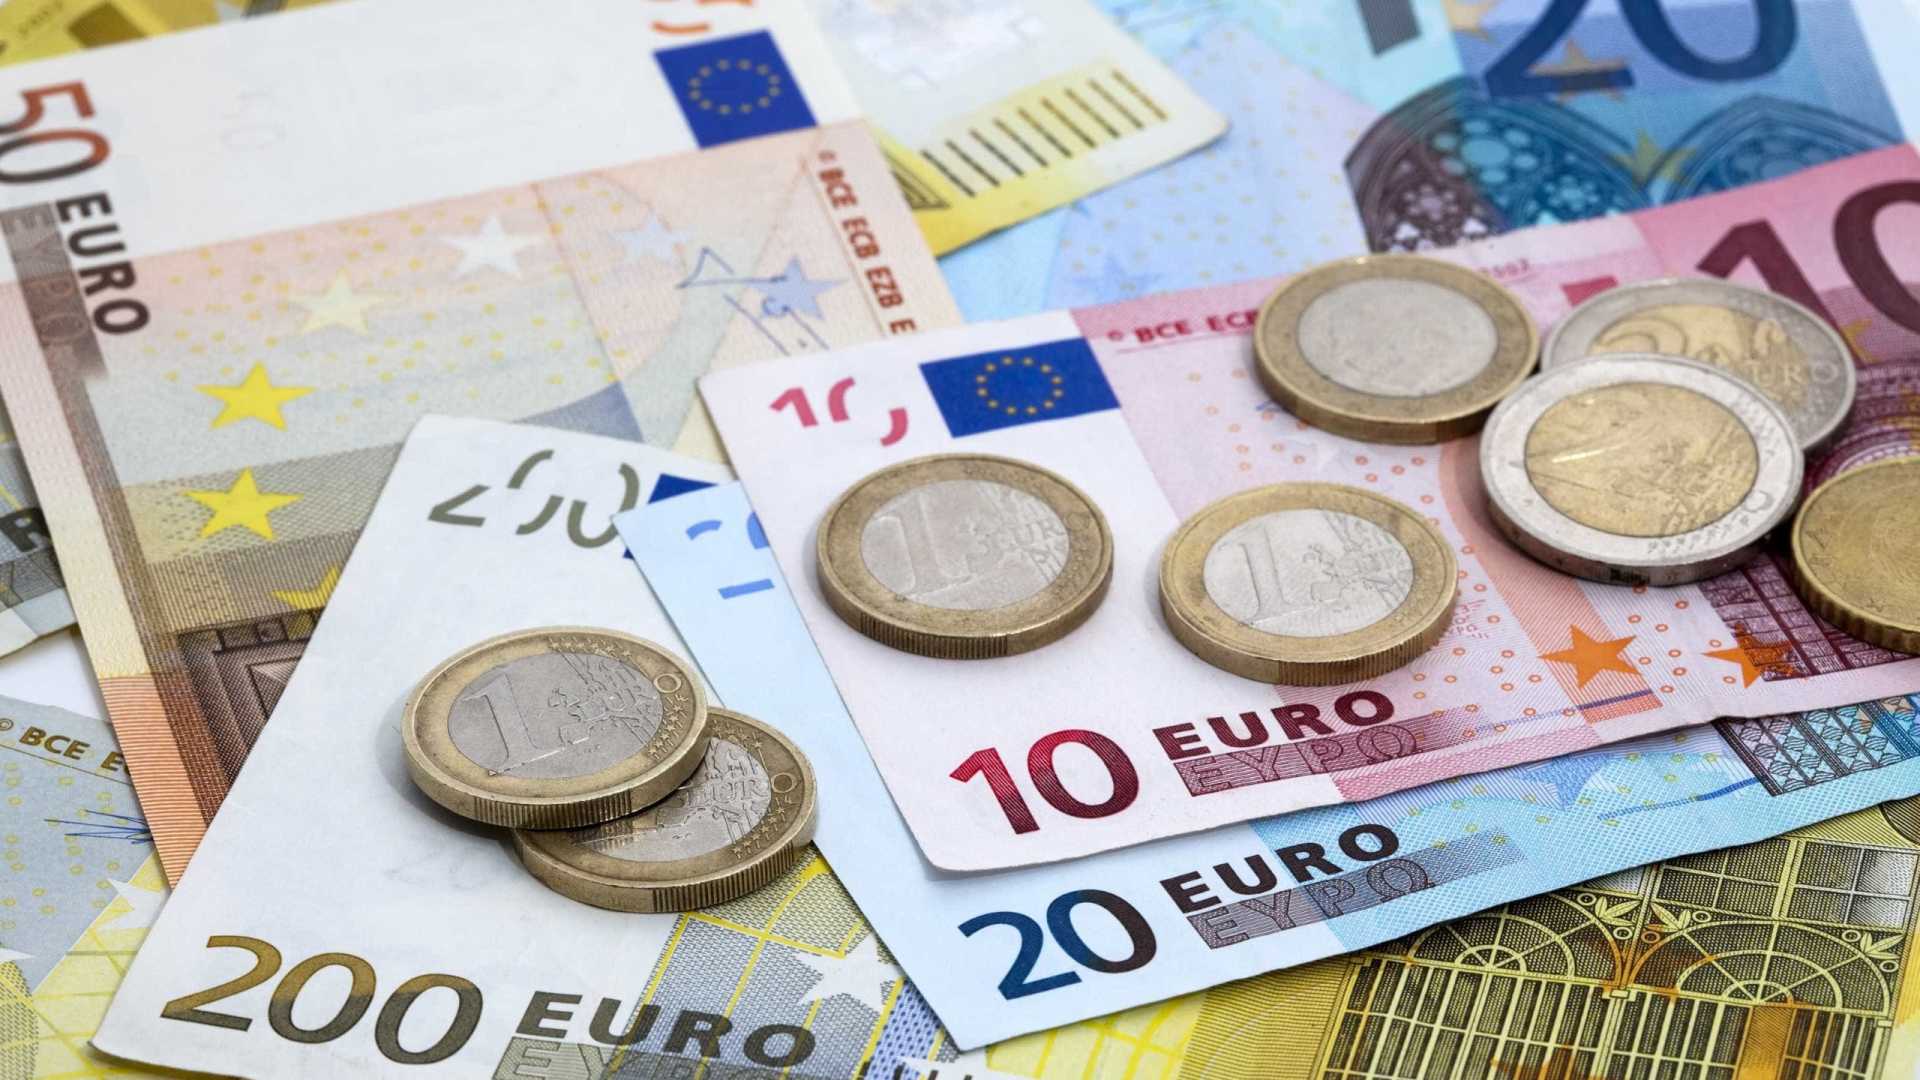 سعر اليورو اليوم الأربعاء 29/1/2020 في البنوك المختلفة مقابل الجنيه المصري